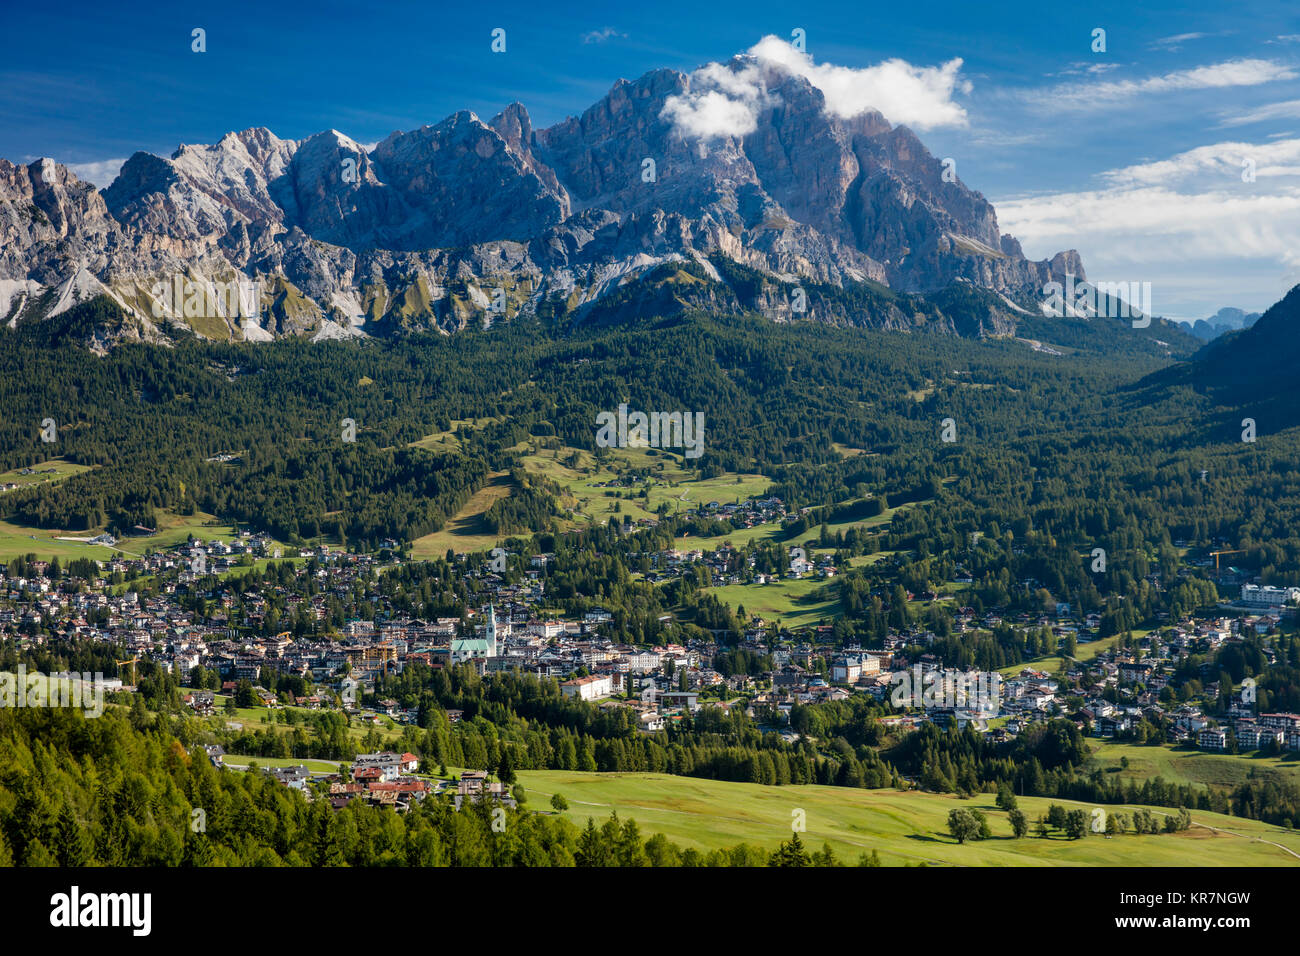 Monte Cristallo les Dolomites qui pèse sur la ville de Cortina d'Ampezzo. Belluno, Italie Banque D'Images